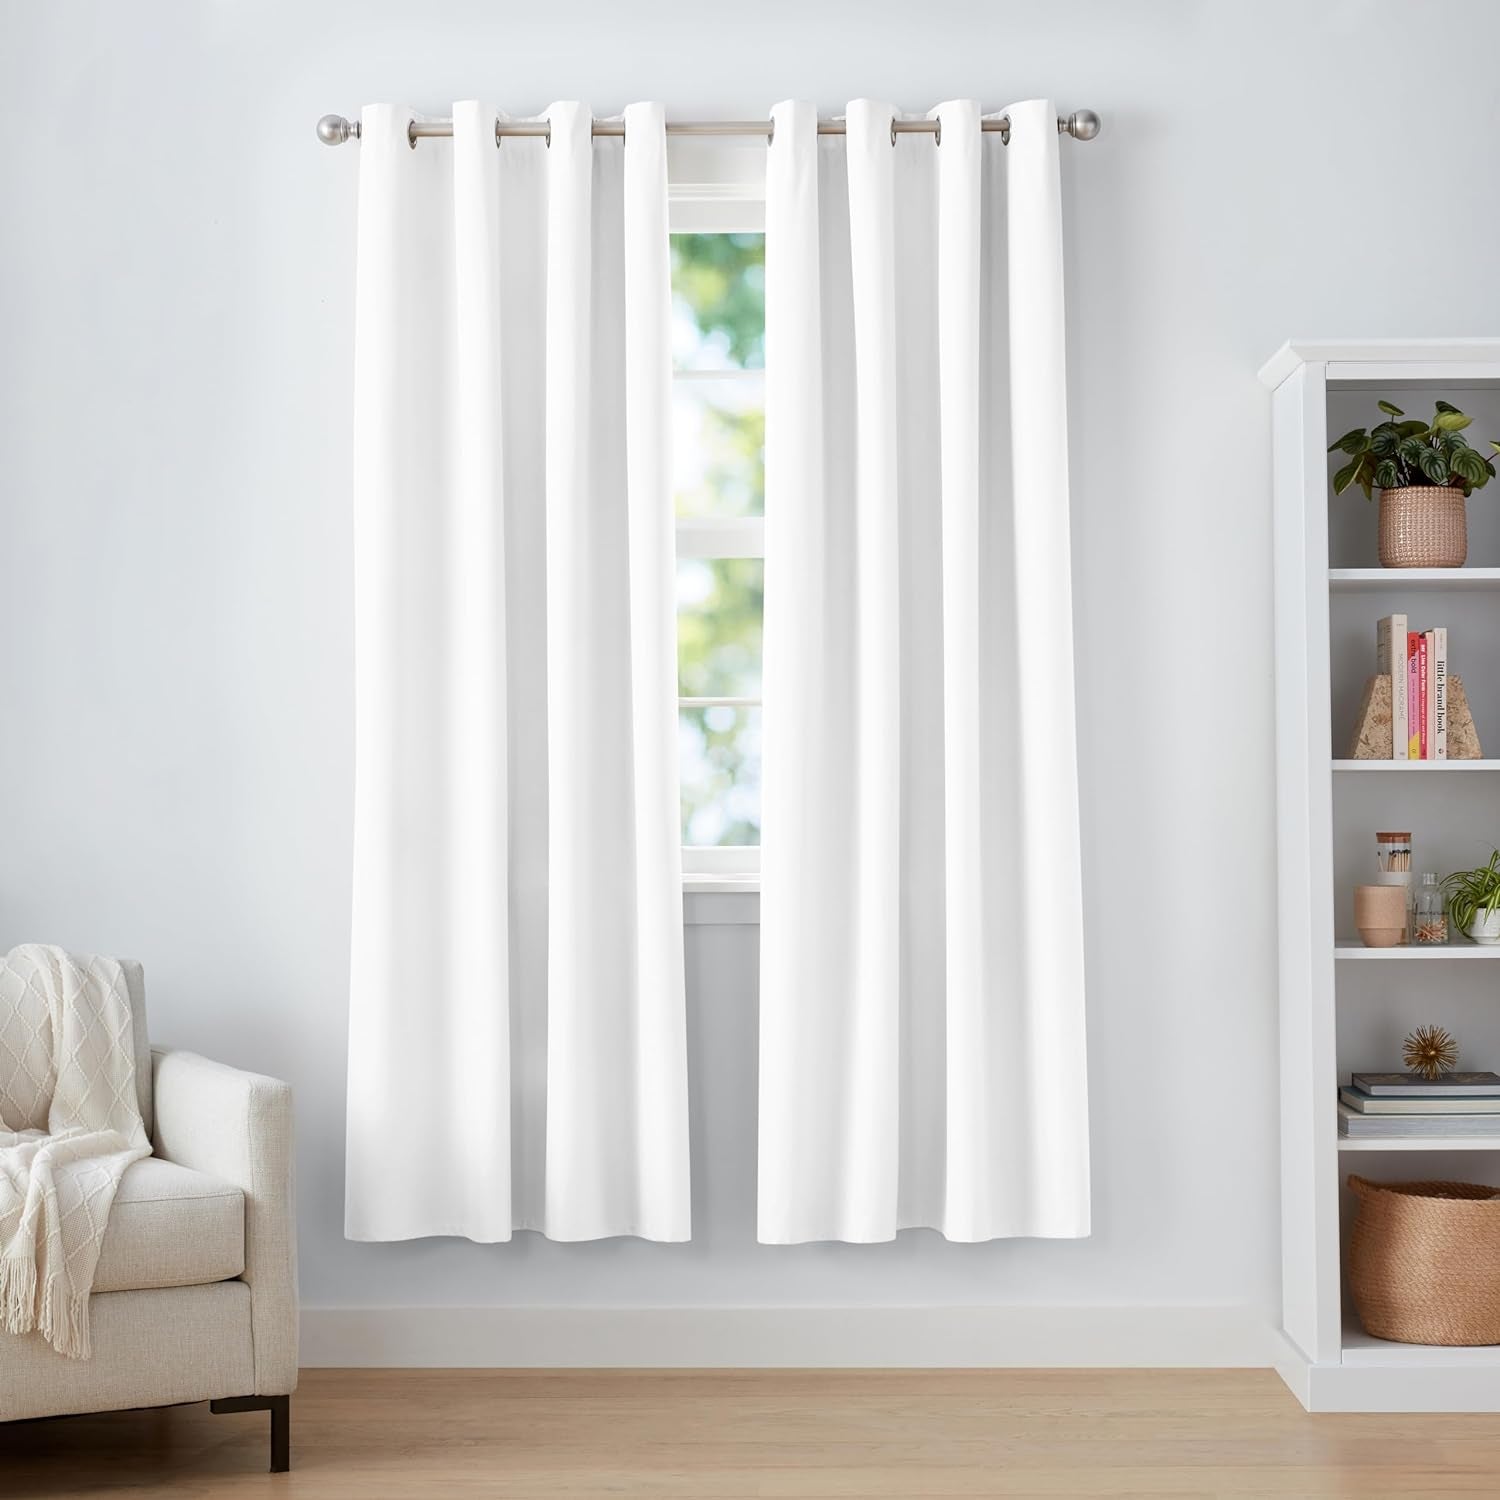 Amazon Basics Room Darkening Blackout Window Curtain with Grommets, 52 X 63 Inches, White - Set of 2  Amazon Basics   